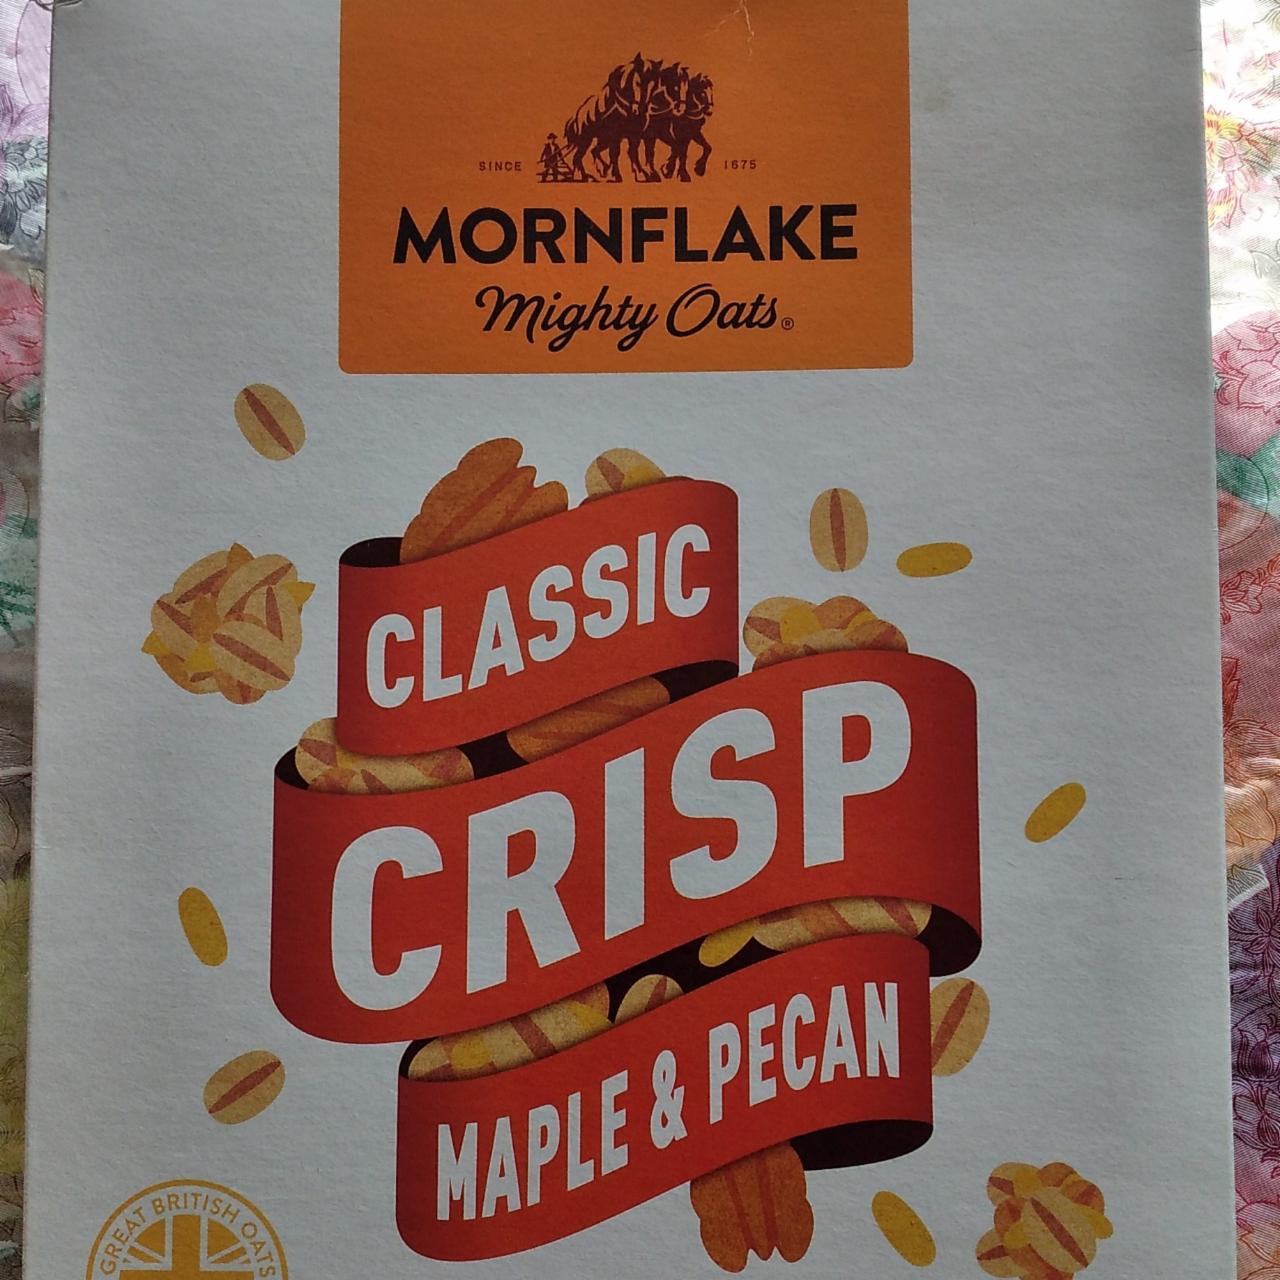 Фото - Oat flakes Classic Crisp Maple & Pecan Mornflake